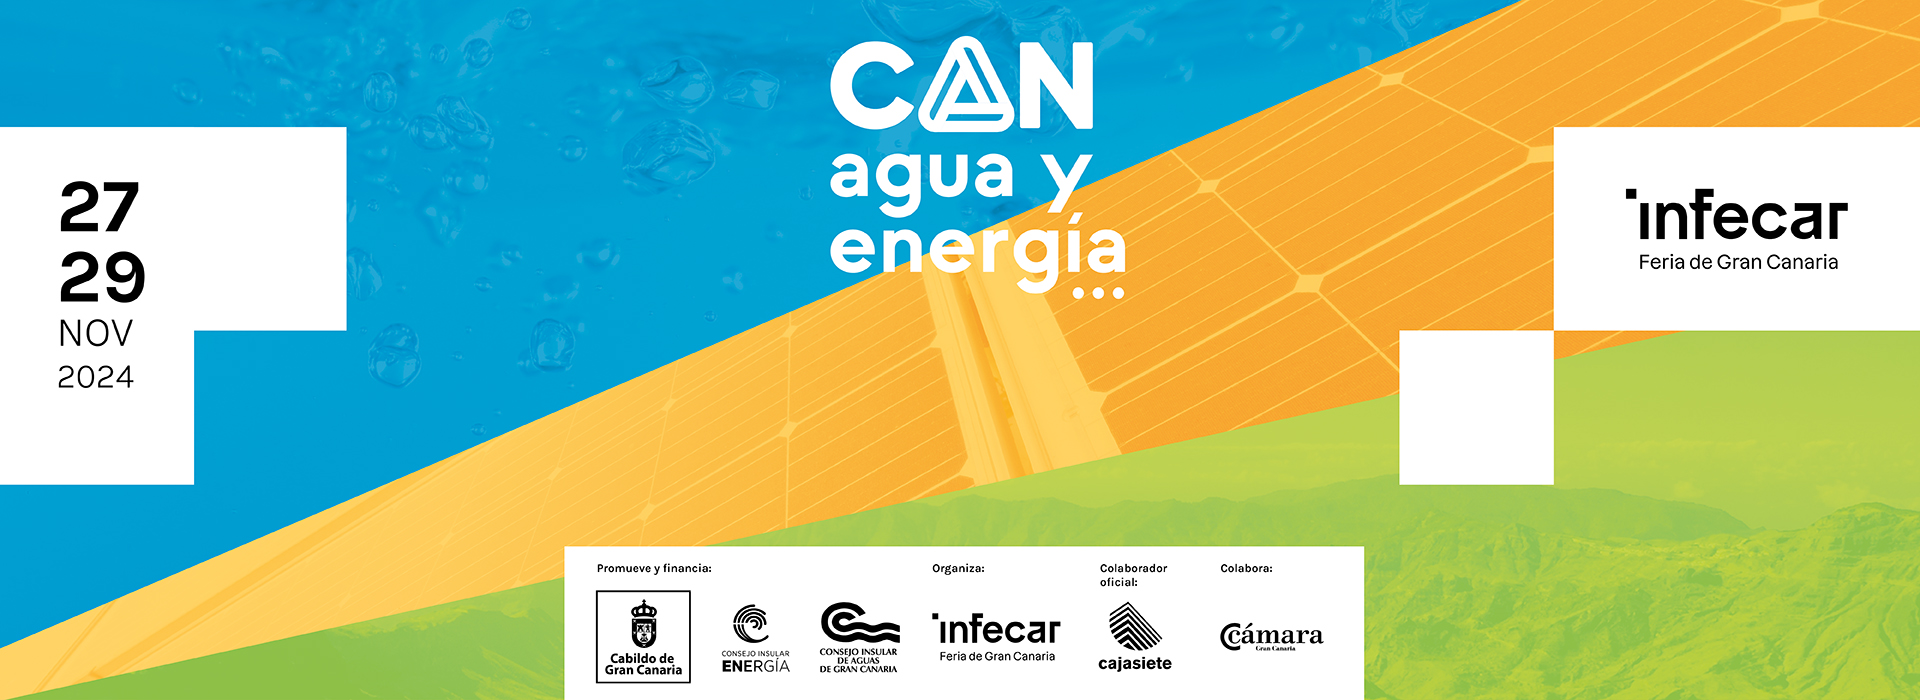 Canagua y Energía 2024